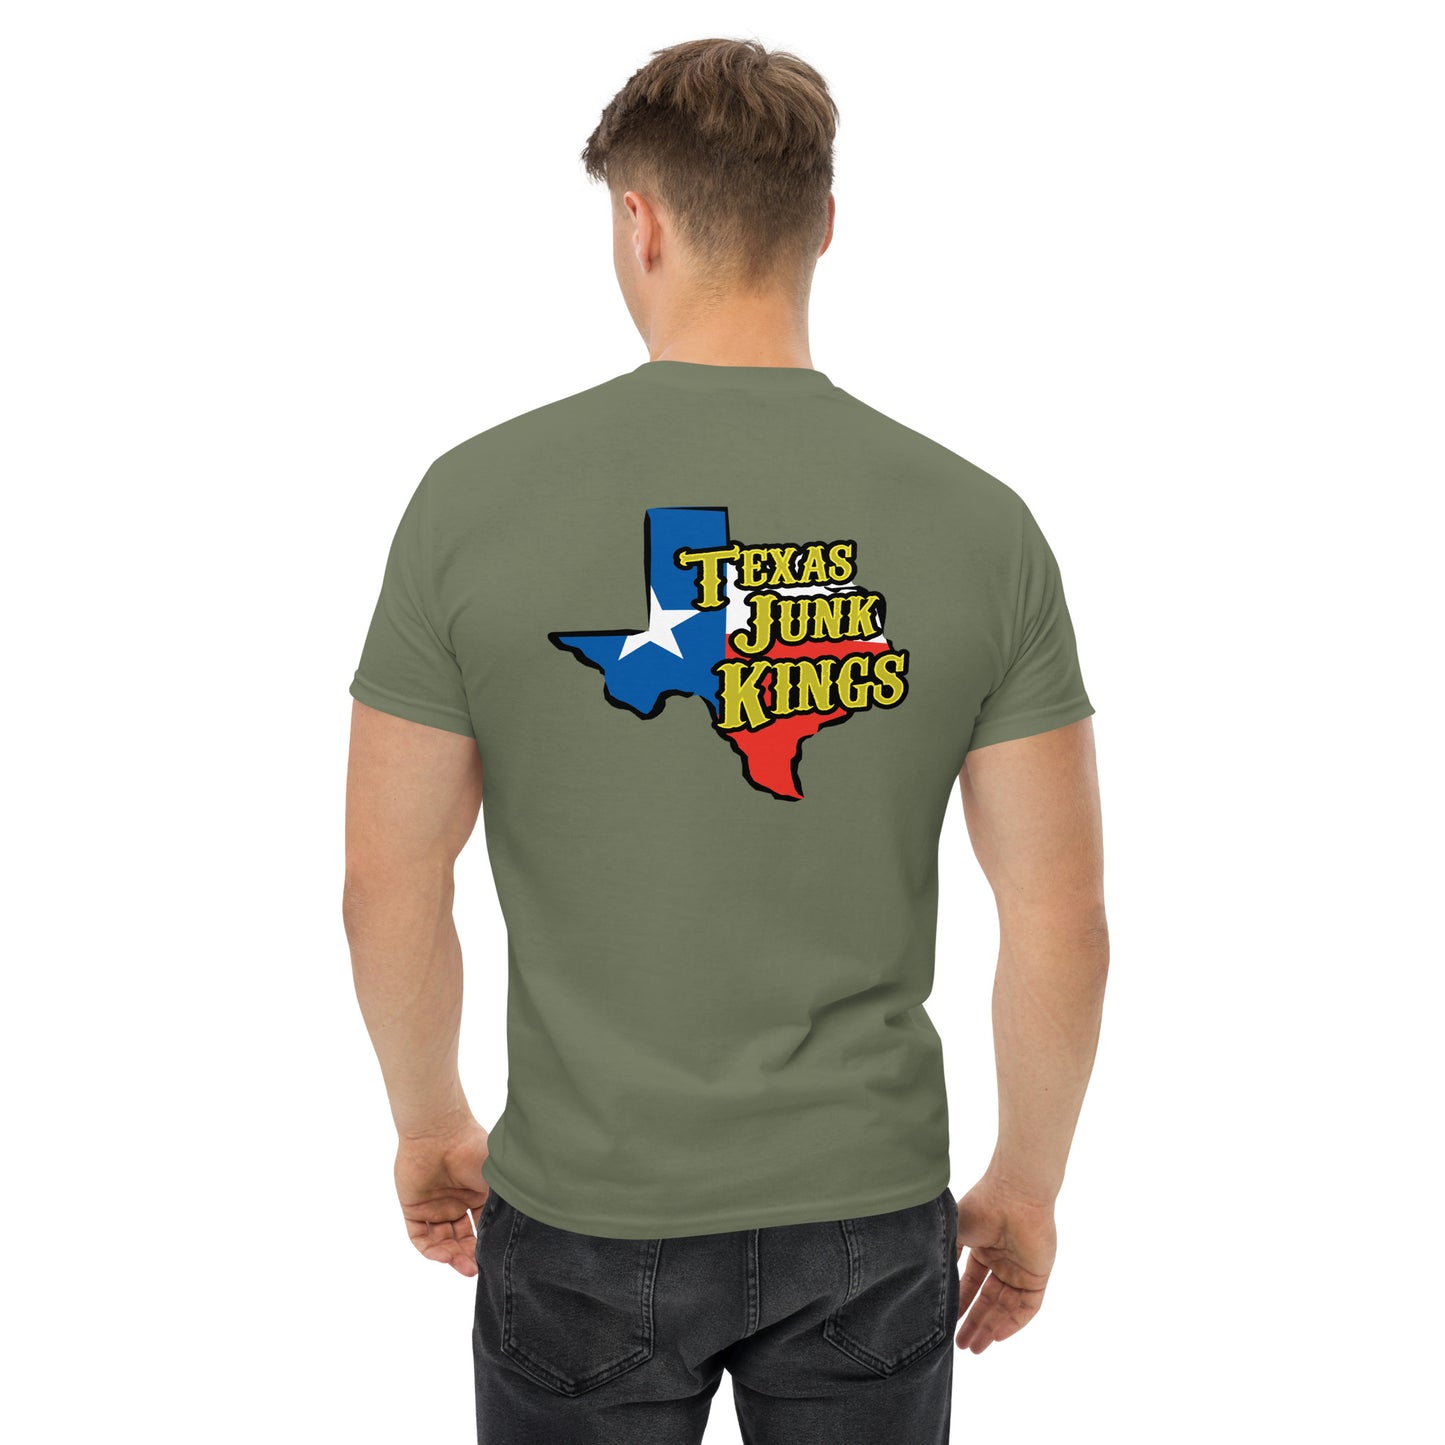 Texas Junk Kings